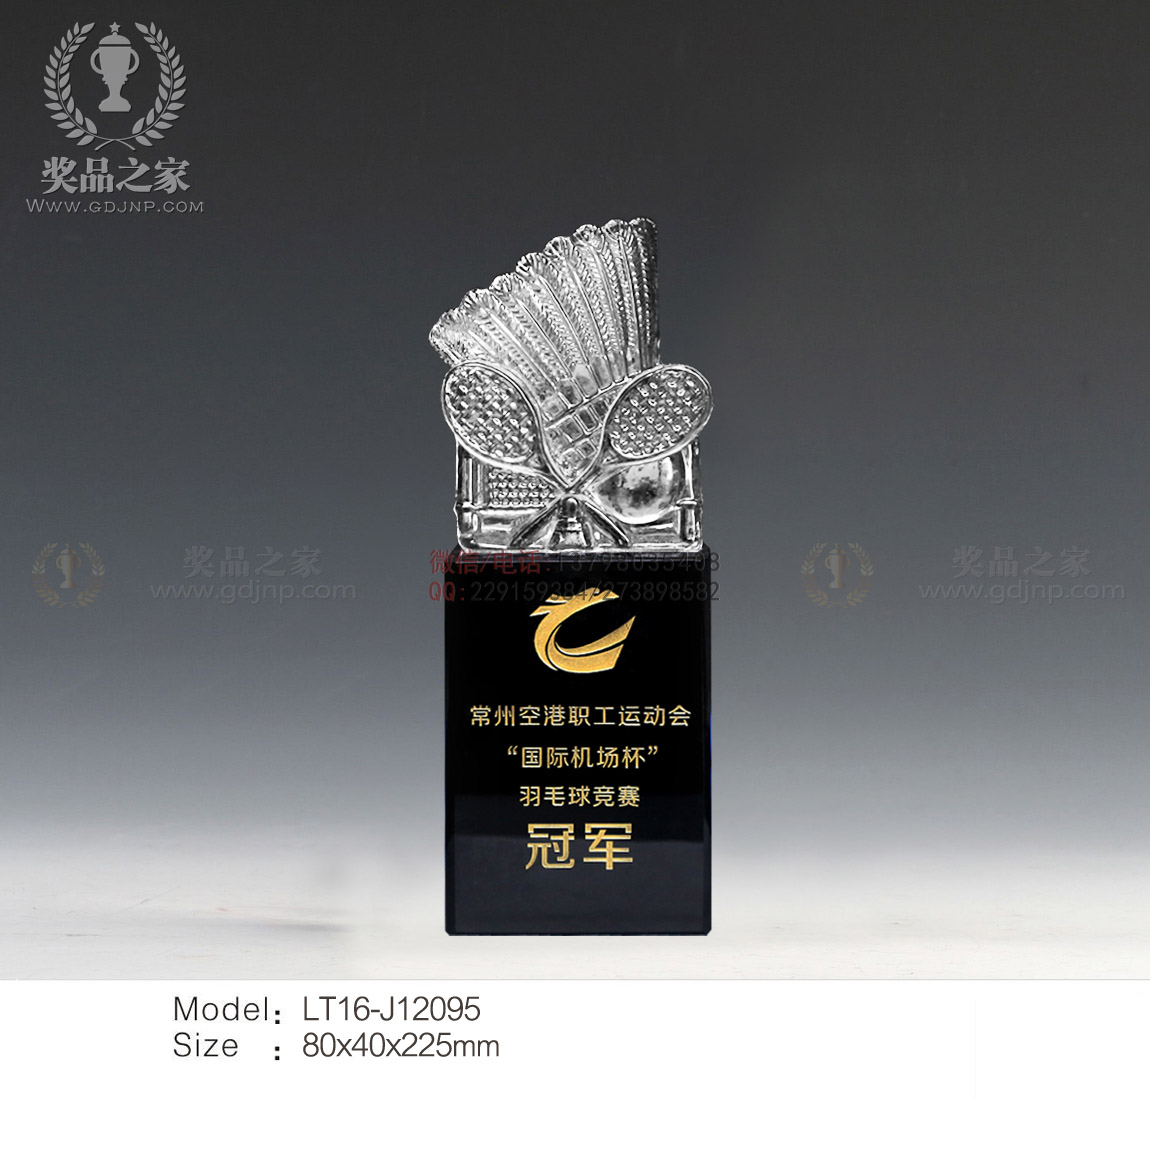 羽毛球奖杯 广东羽毛球水晶奖杯奖牌制作 惠州篮球比赛水晶奖杯